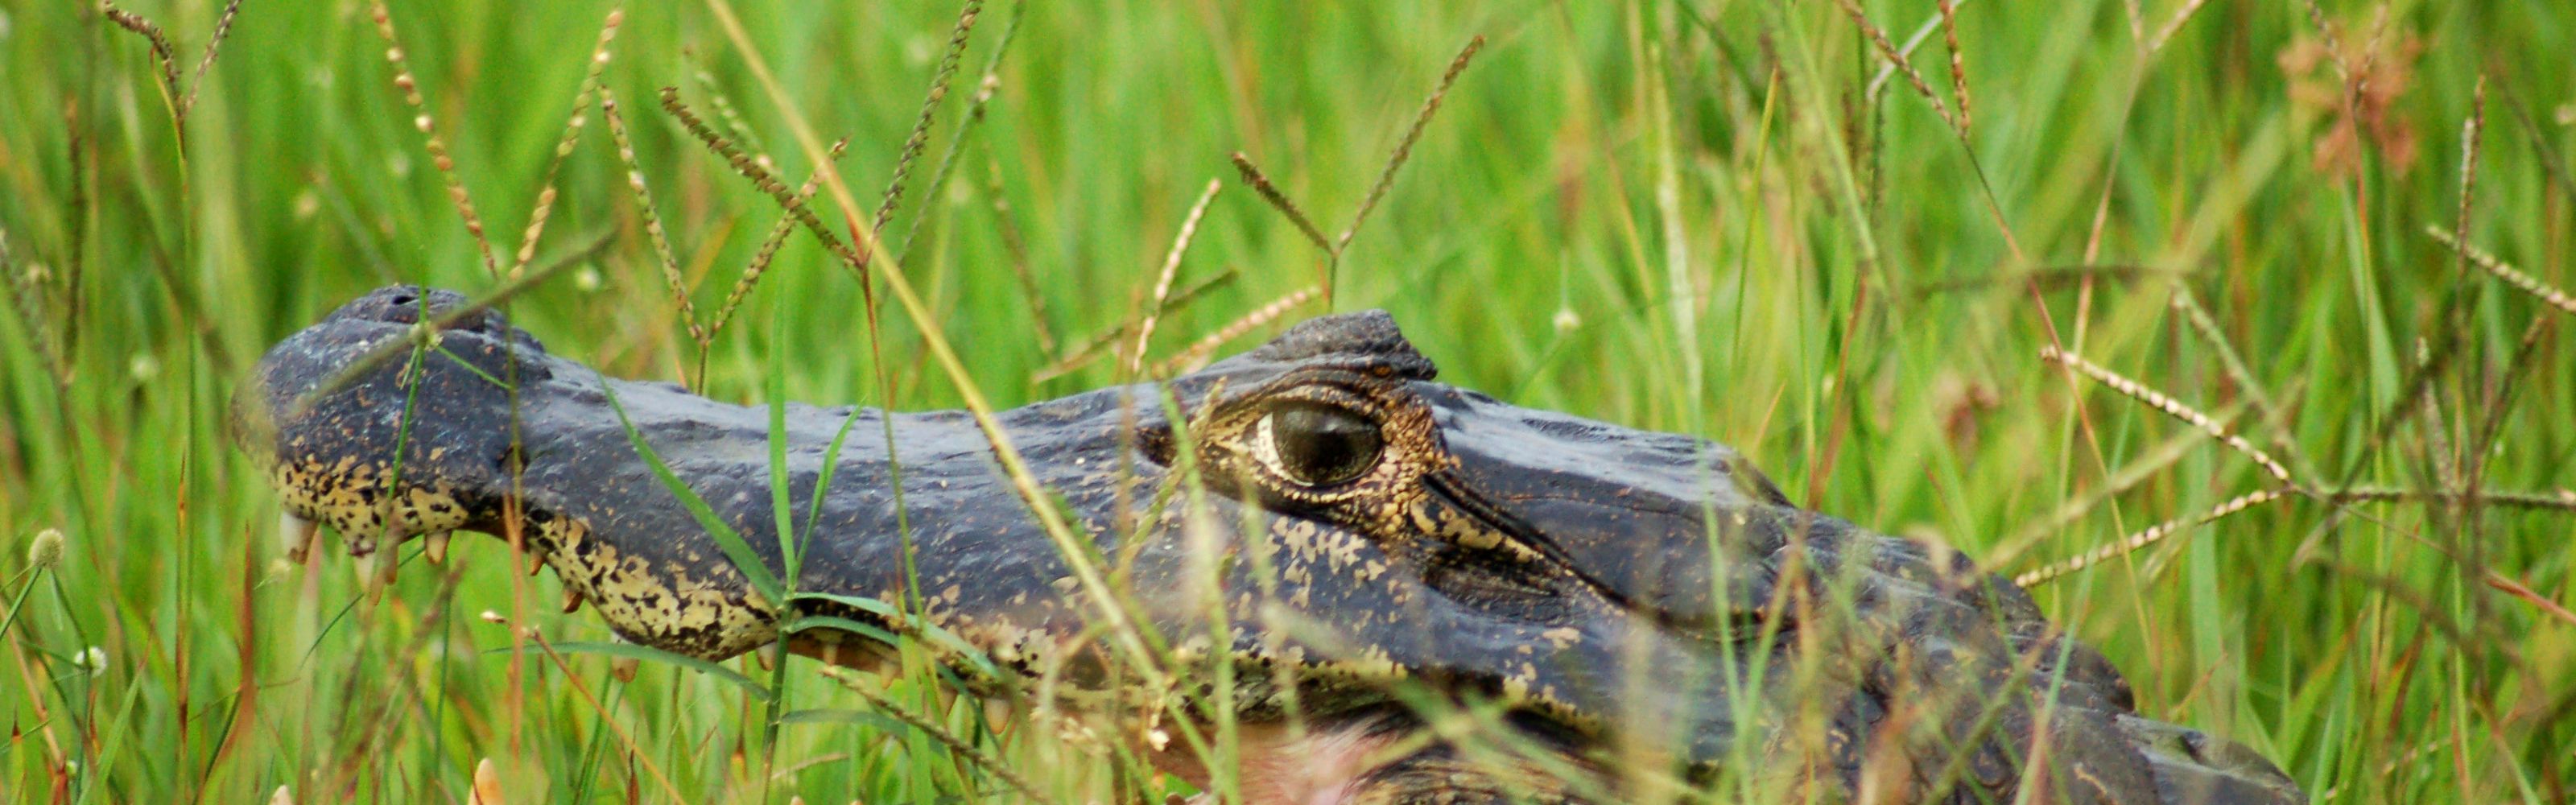 Bem escondido nas altas gramíneas do pantanal da região brasileira do Pantanal, o caimão (Caiman crocodilus).